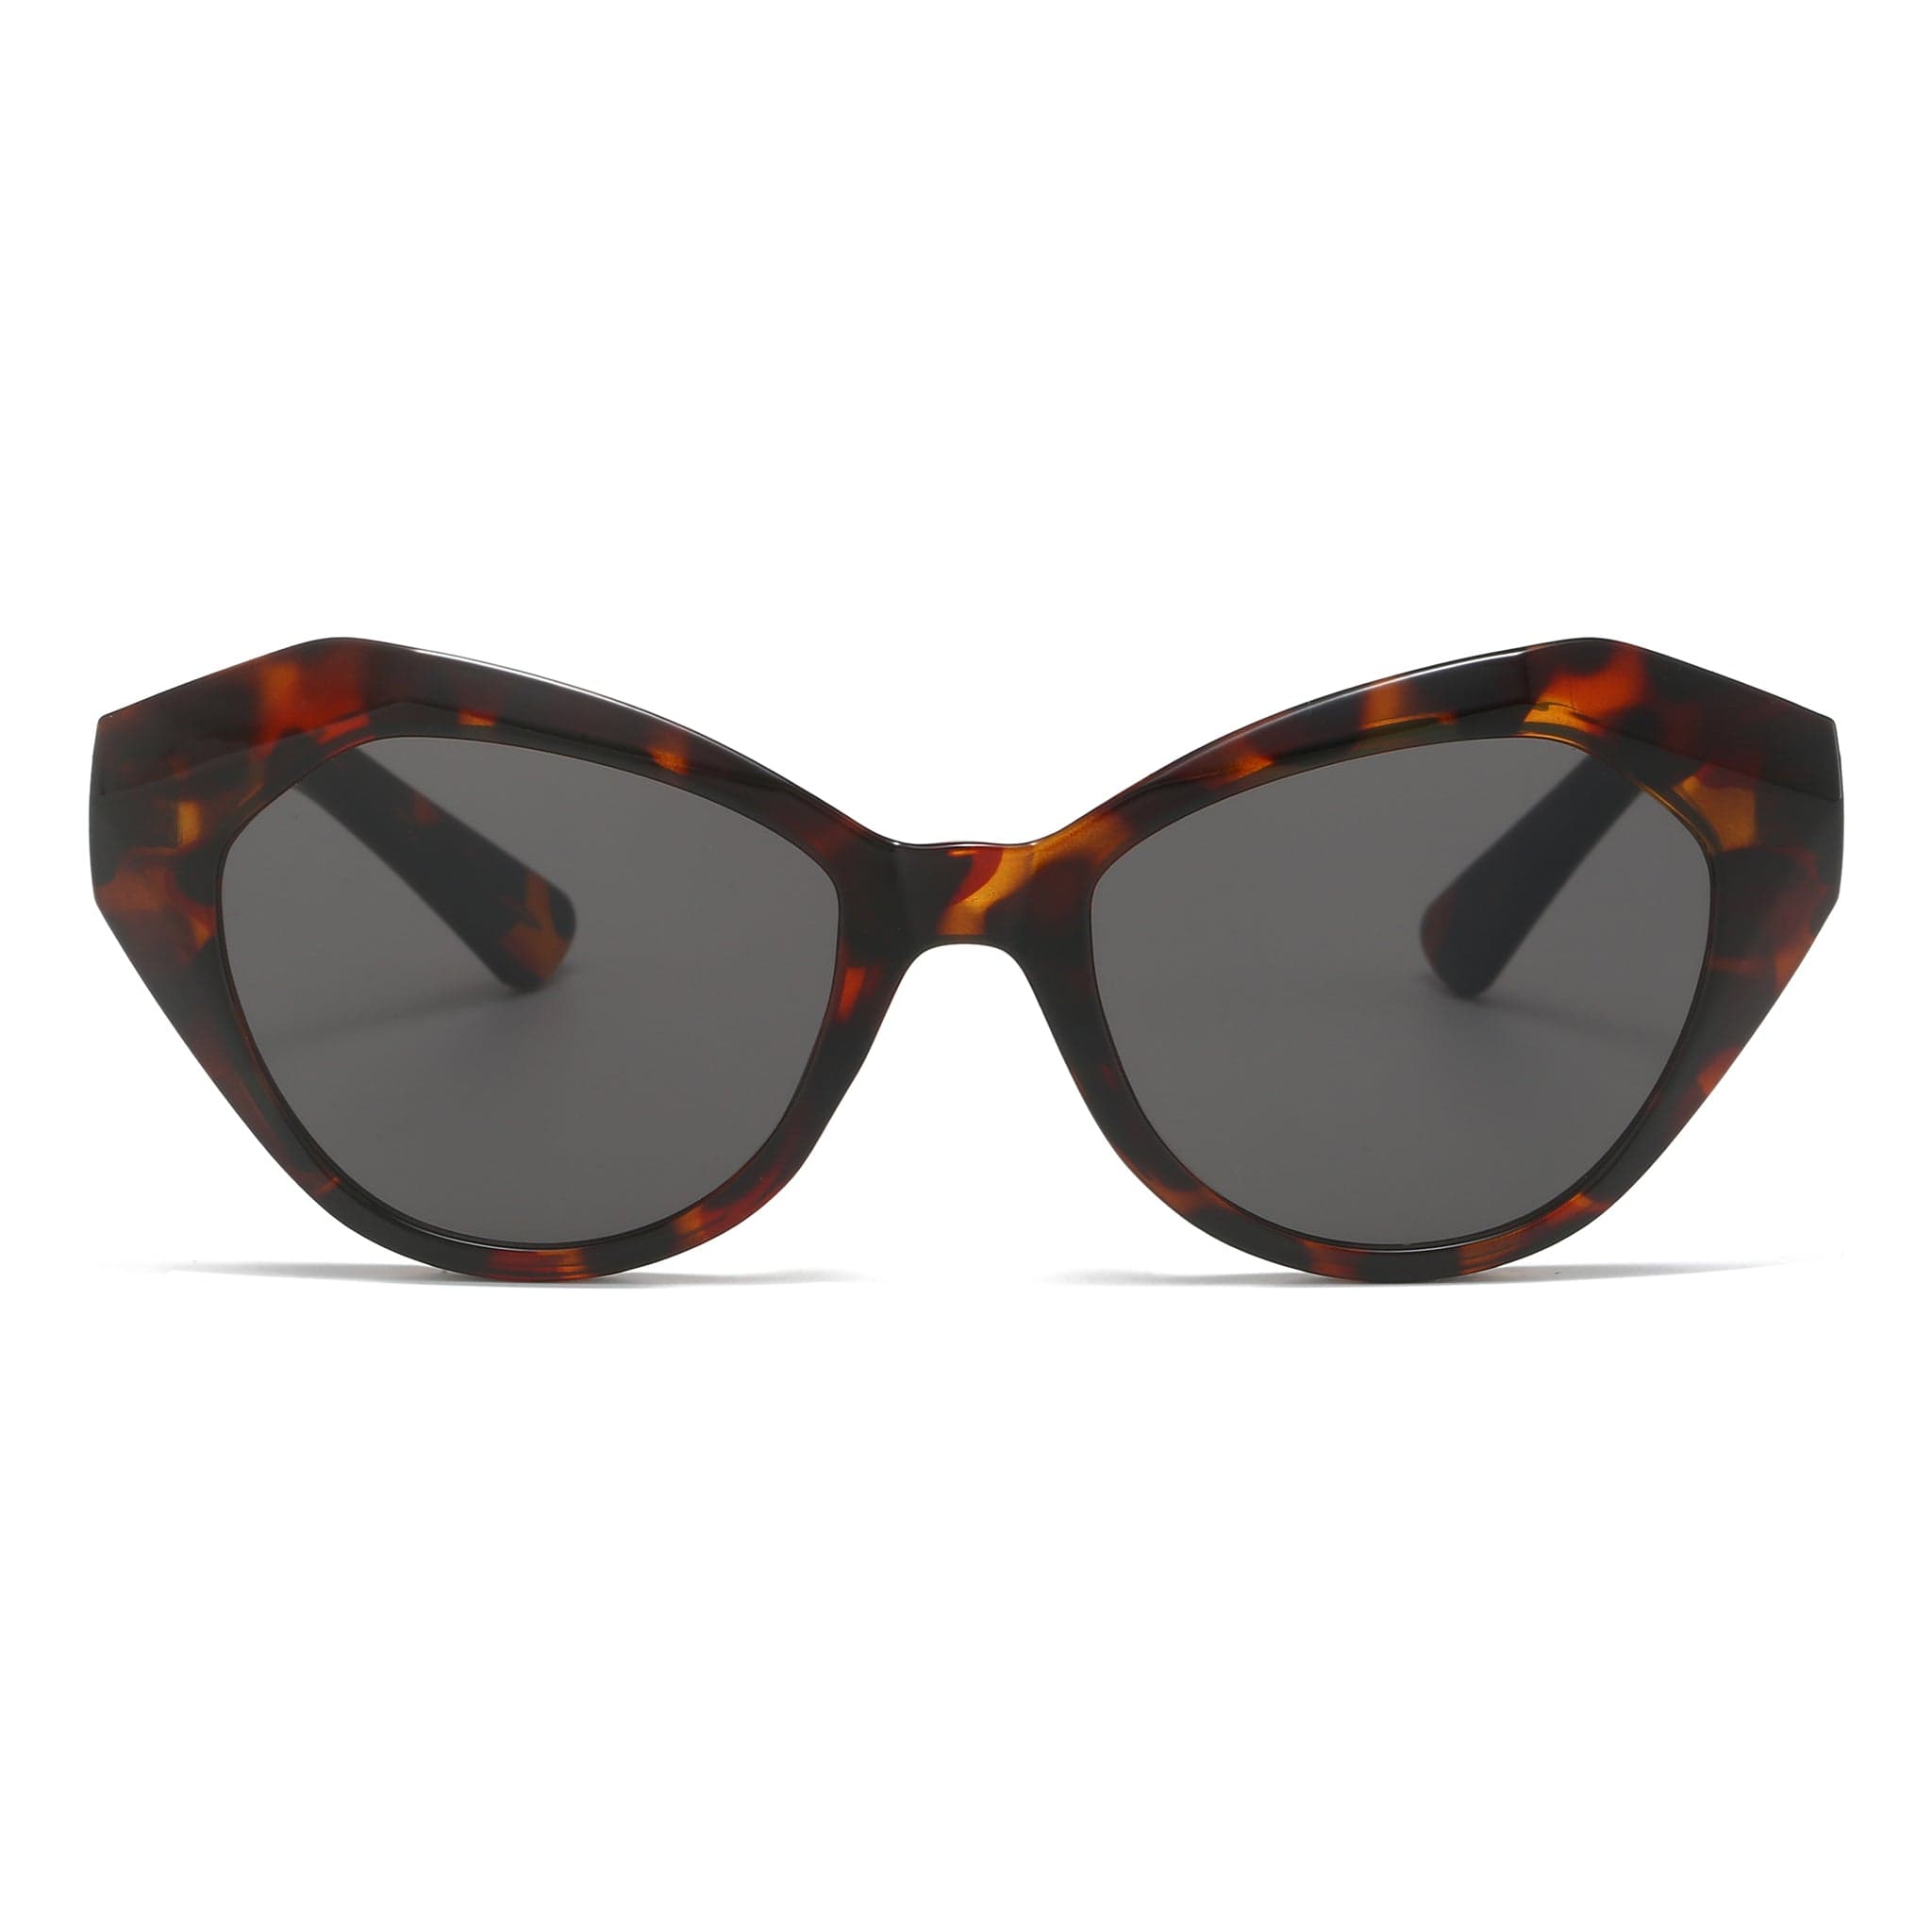 GIUSTIZIERI VECCHI Sunglasses Small / Merigold Tortoise LunaCat Duo